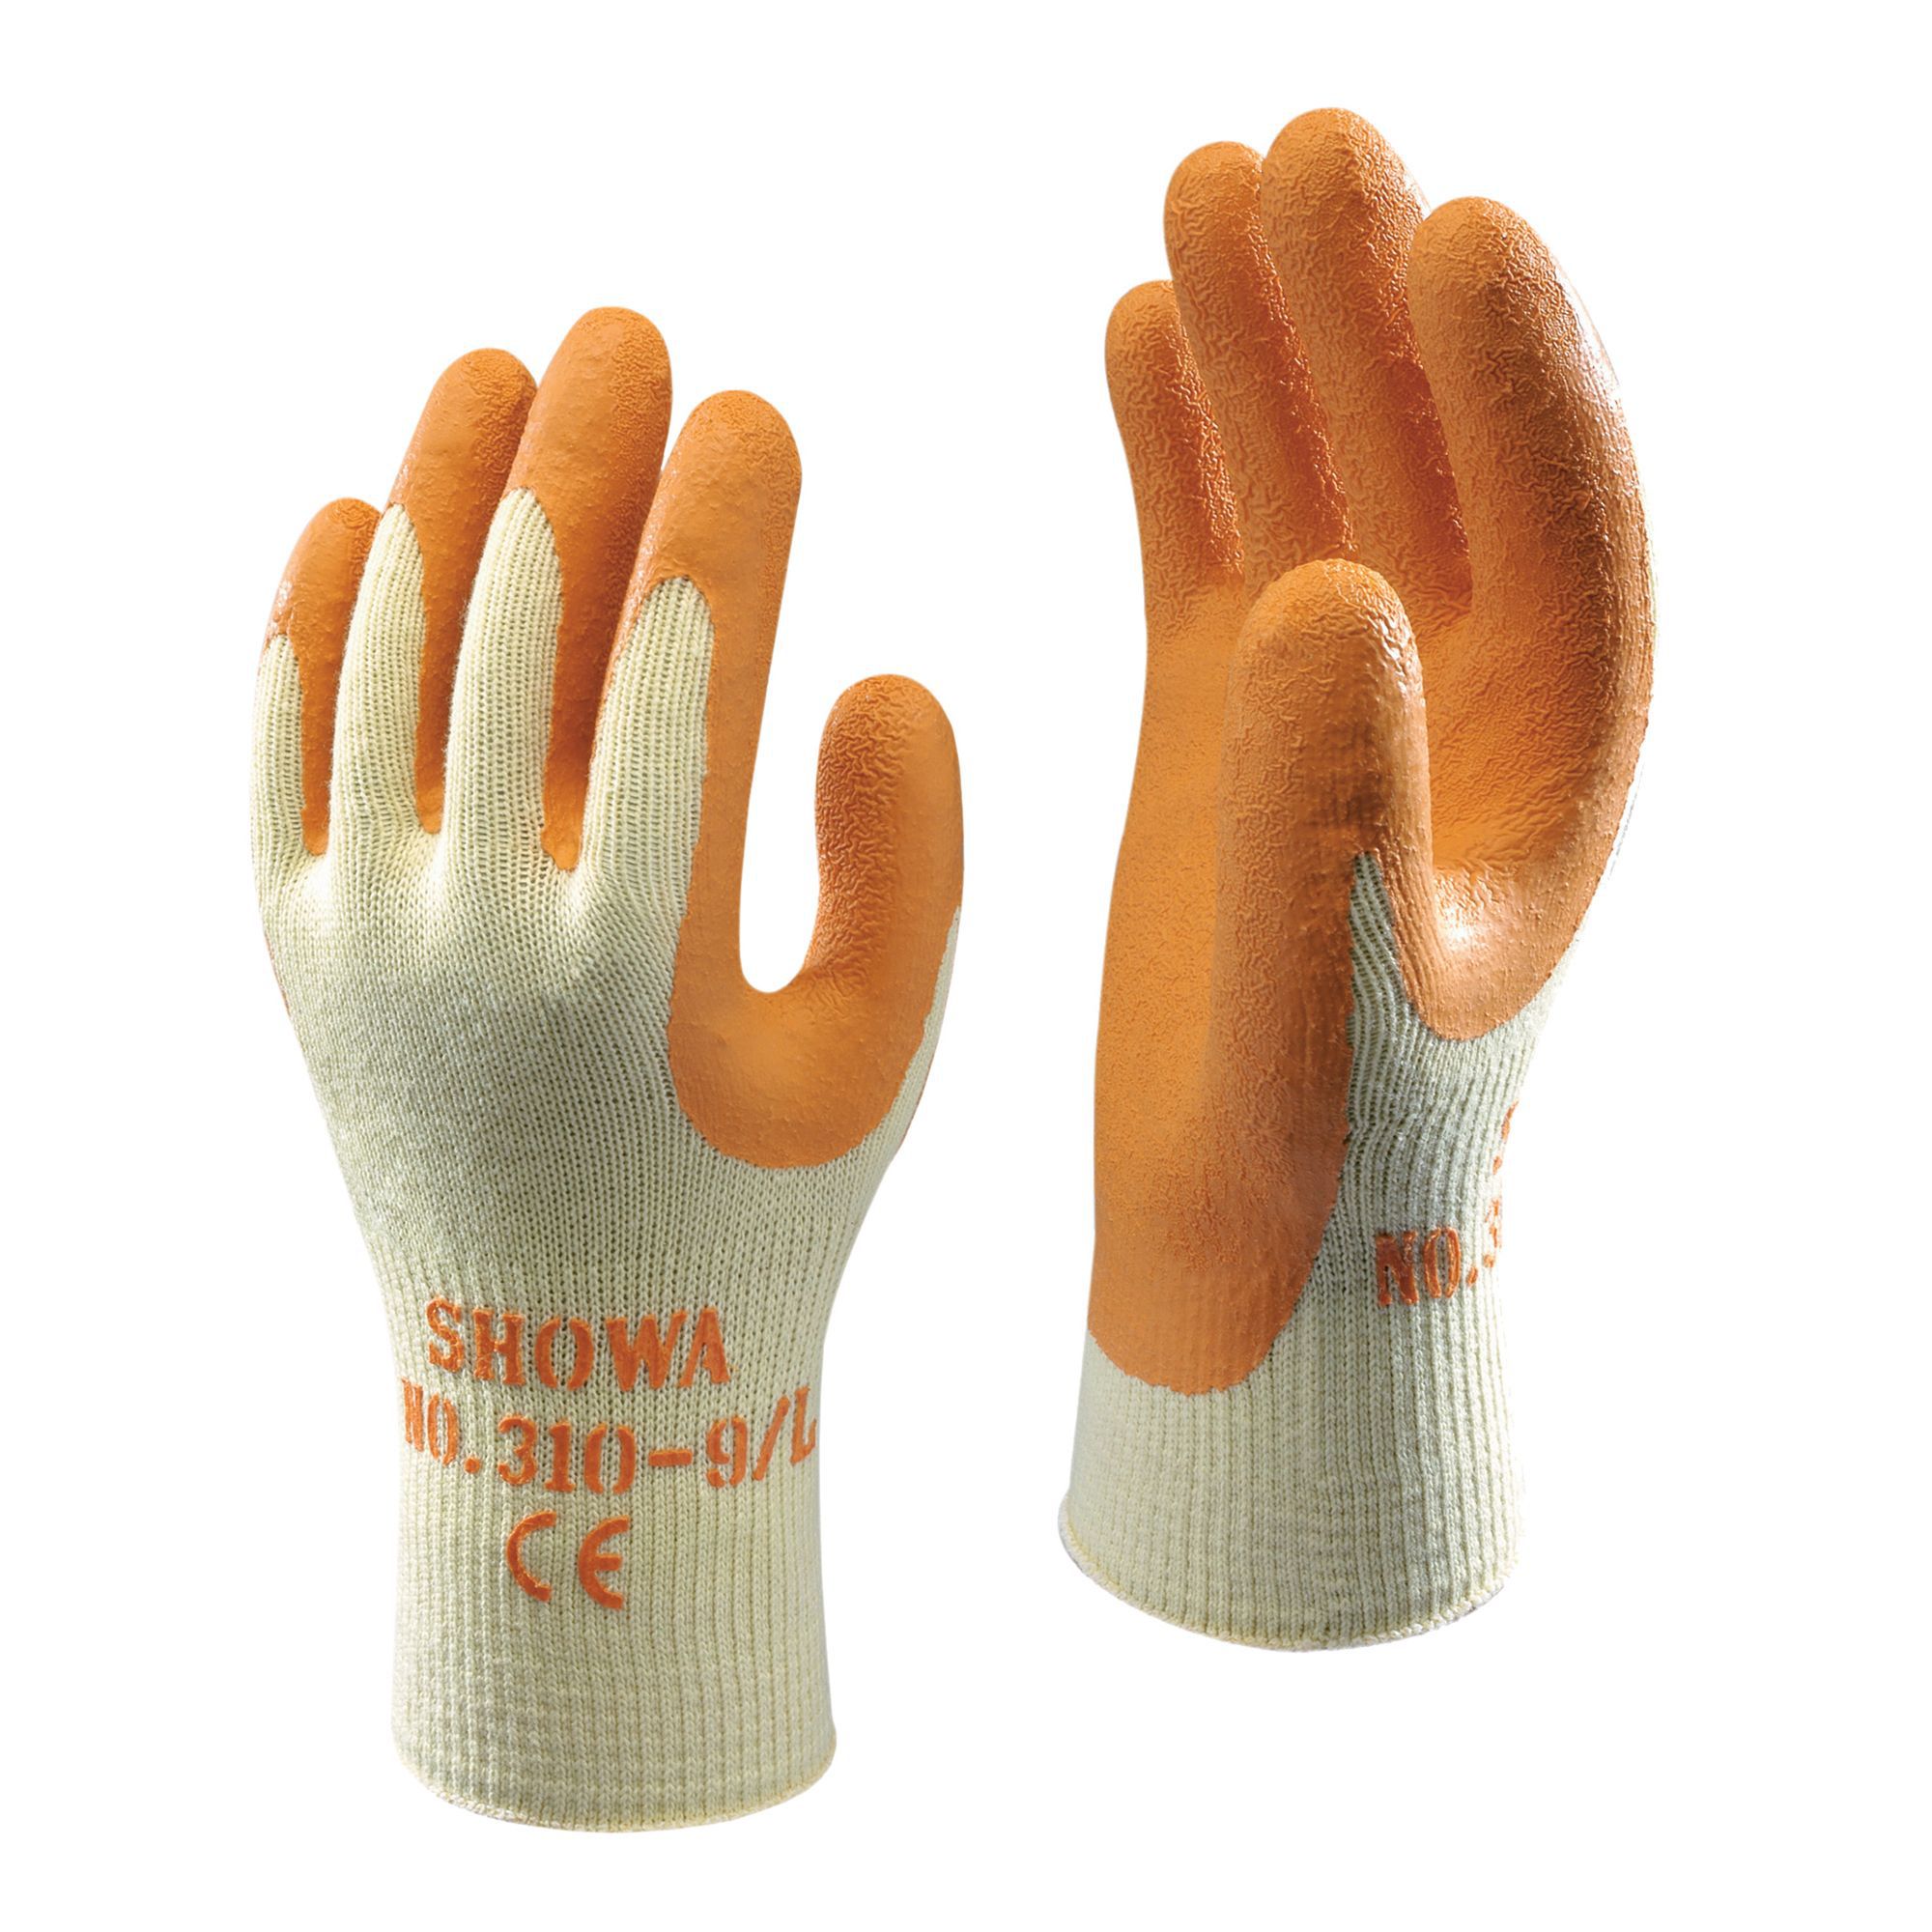 Showa Specialist handling gloves, Medium